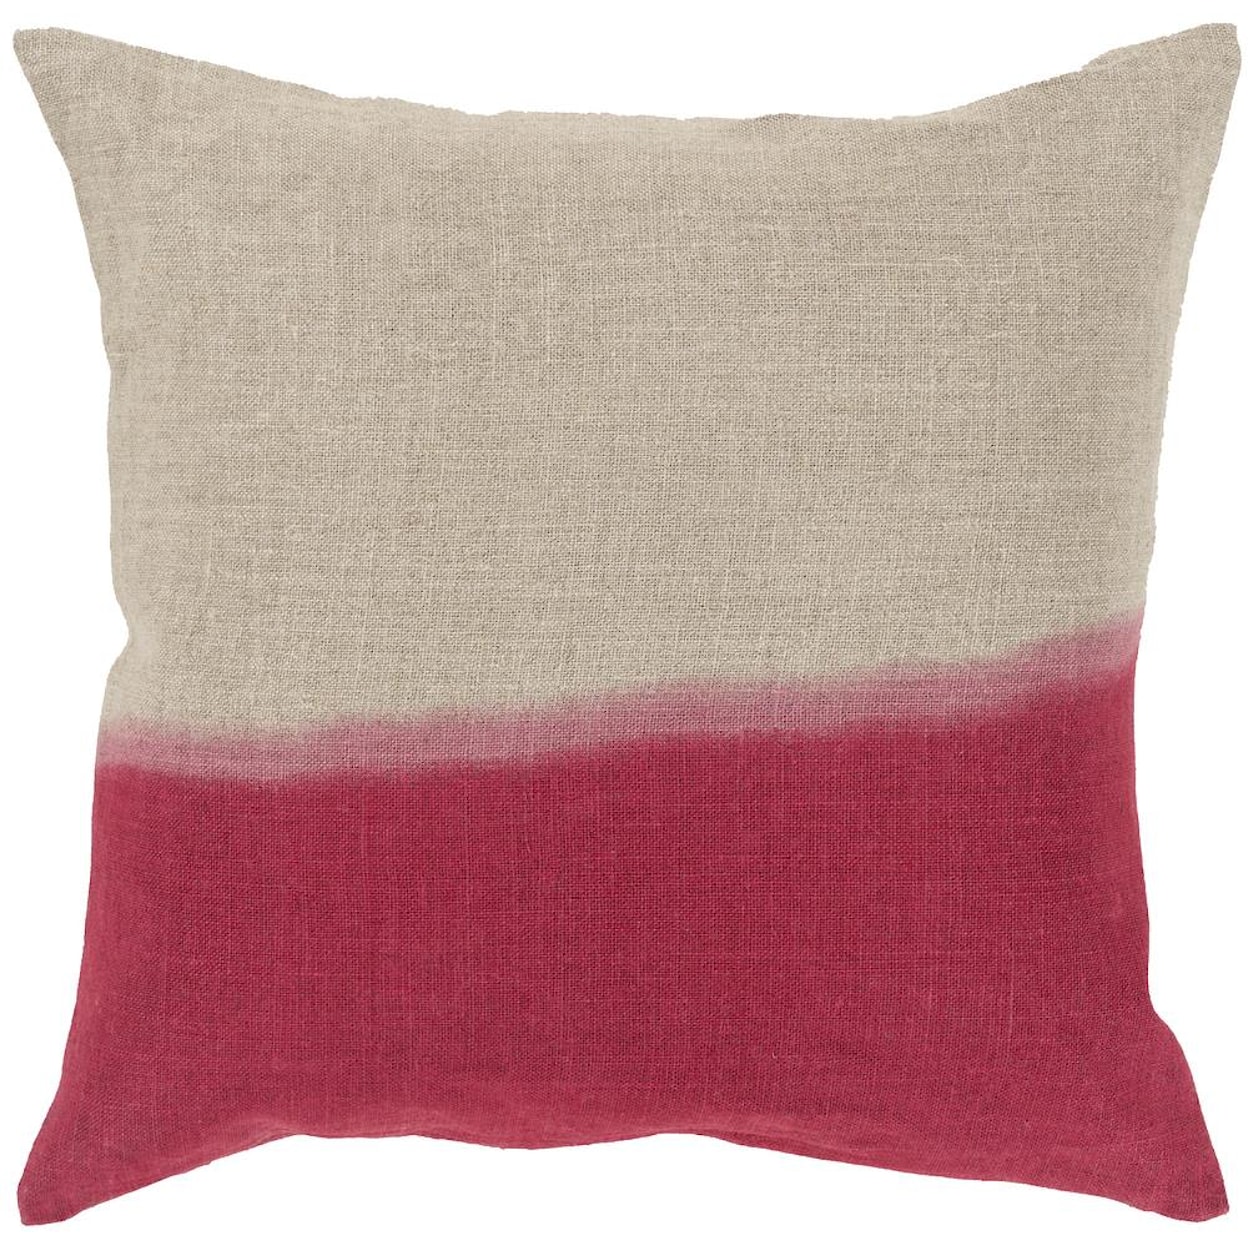 Surya Pillows 22" x 22" Dip Dyed Pillow